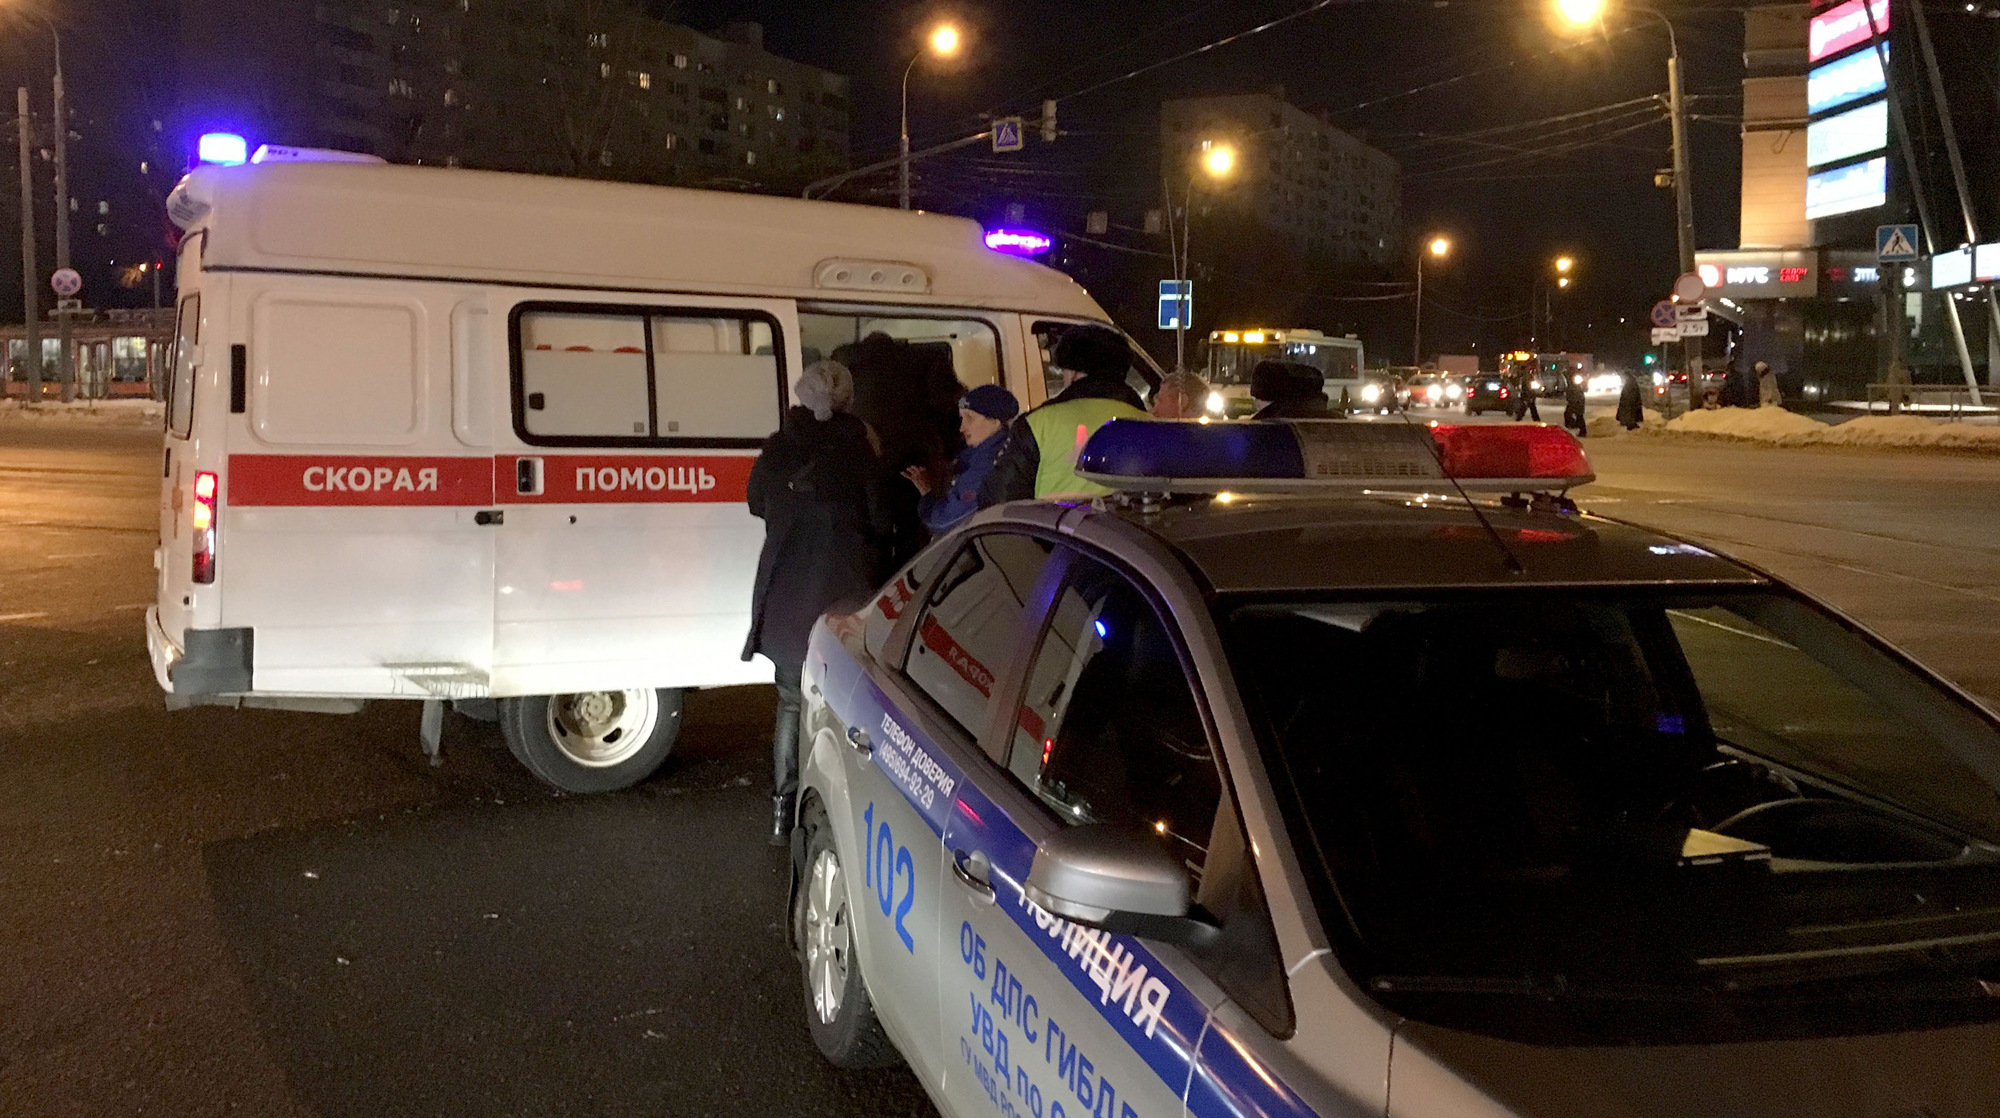 Пострадавший госпитализирован, водитель авто задержан на месте Фото: © Агентство Москва